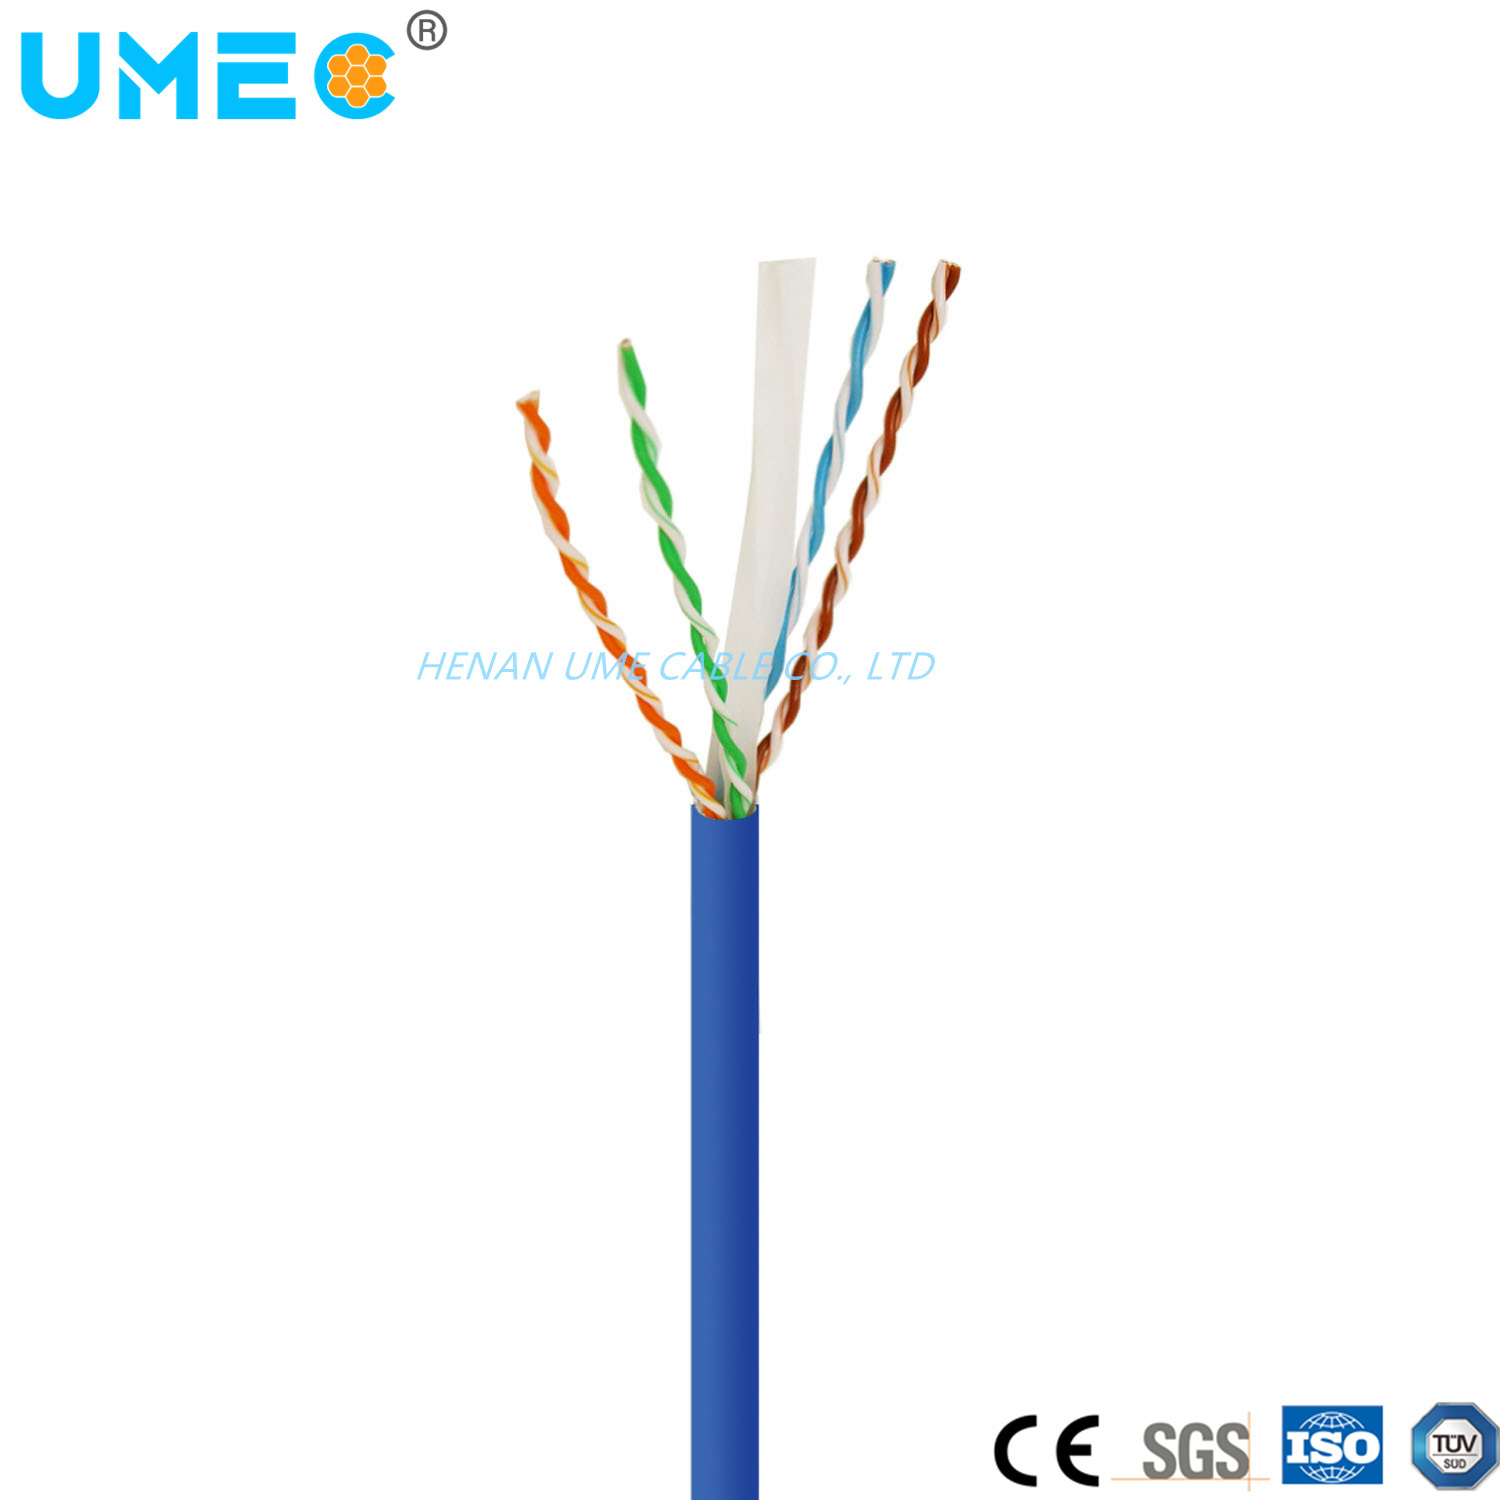 
                Free Sample Type de réseau câble Ethernet Cat5e/Cat6/Cat7 UTP Prix cordon de raccordement câblage de communication
            